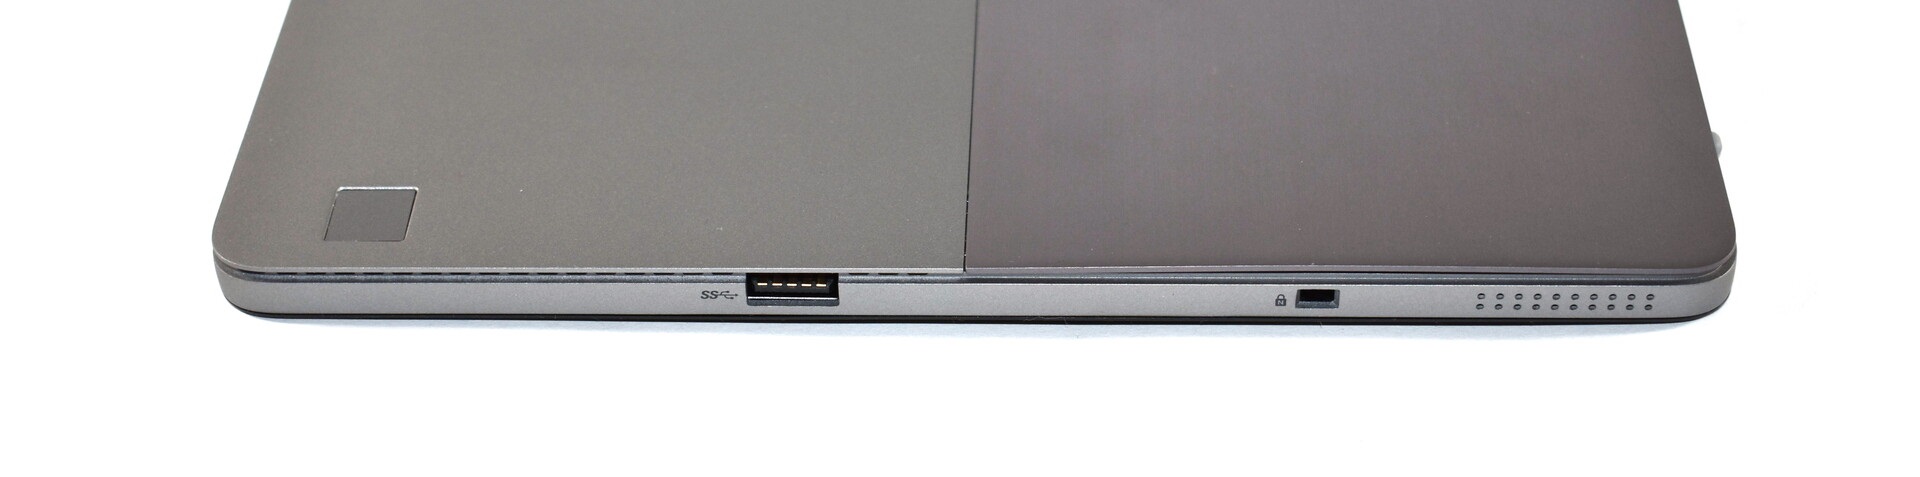 Đánh giá Dell Latitude 7200 2 trong 1: Chiếc laptop tạo ấn tượng tốt, Chuyên trang tư vấn laptop